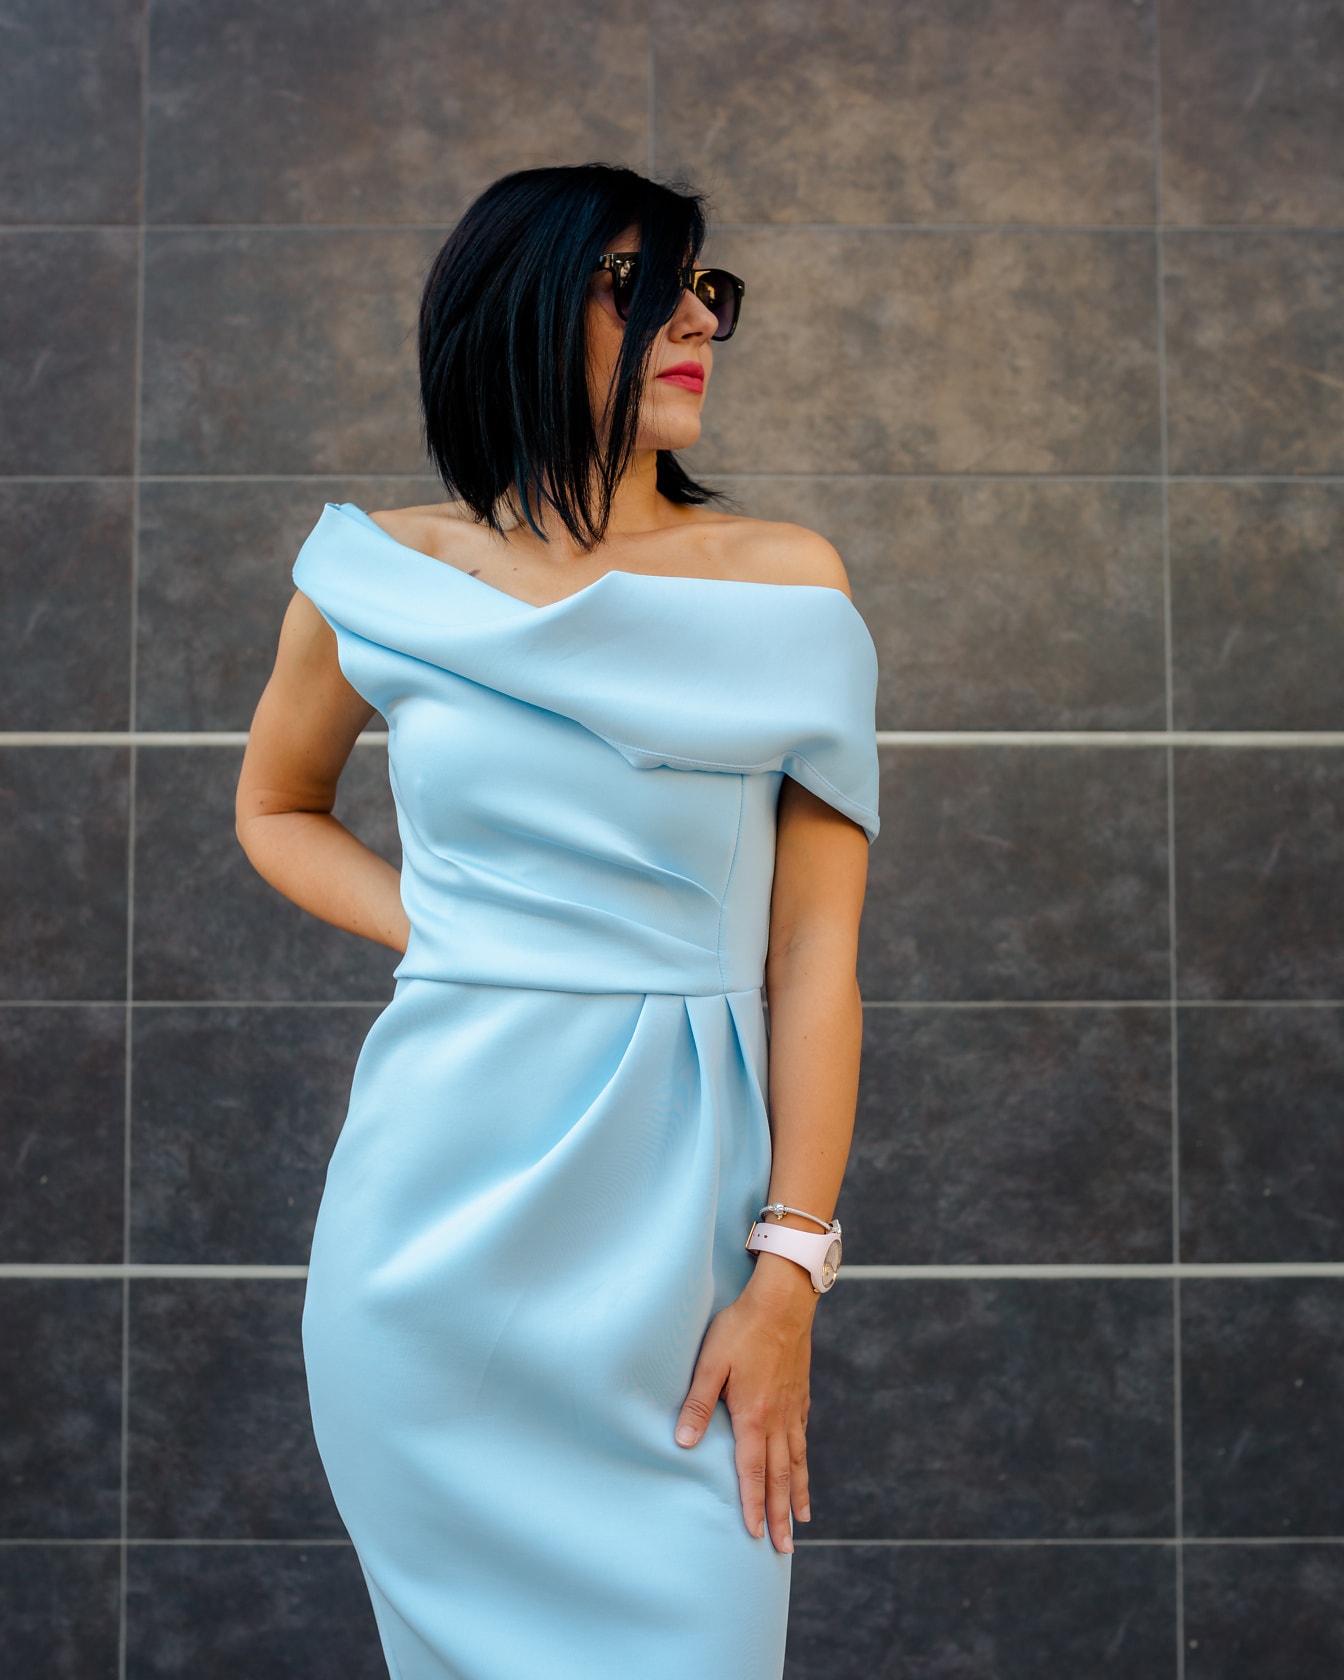 Model foto tampan kurus dengan gaun biru cerah